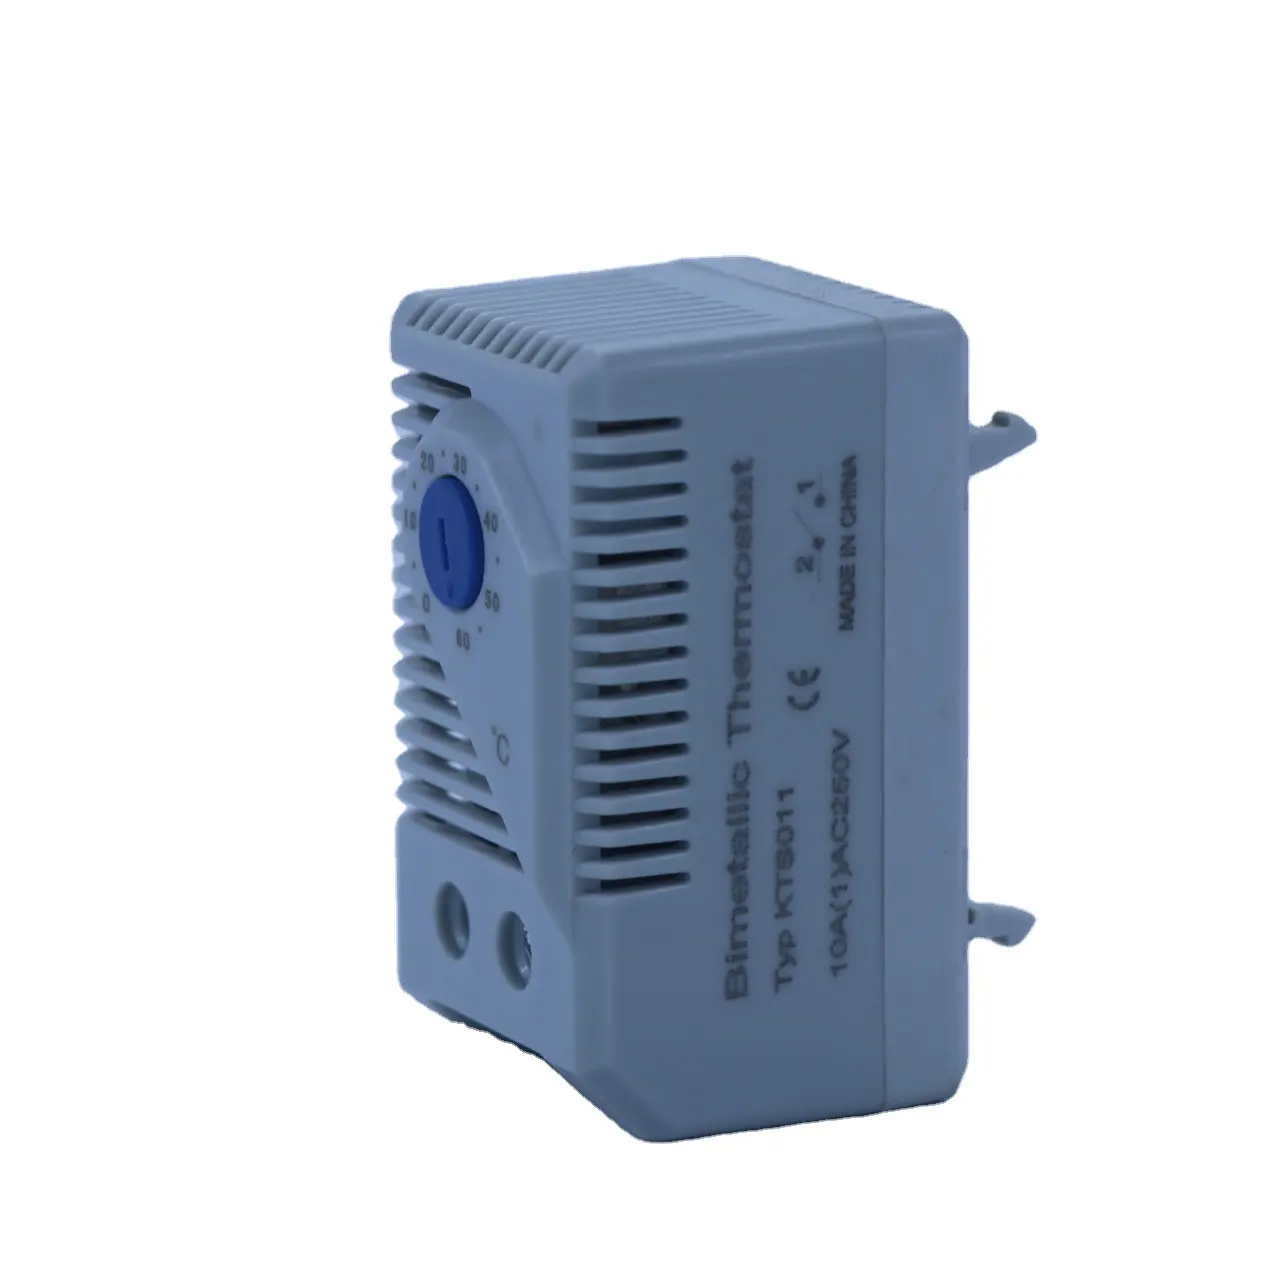 Özelleştirmek sıcak satış ve yüksek kaliteli dijital termostat sıcaklık kumandası hava termostatı isıtma sıcaklık kontrol cihazı